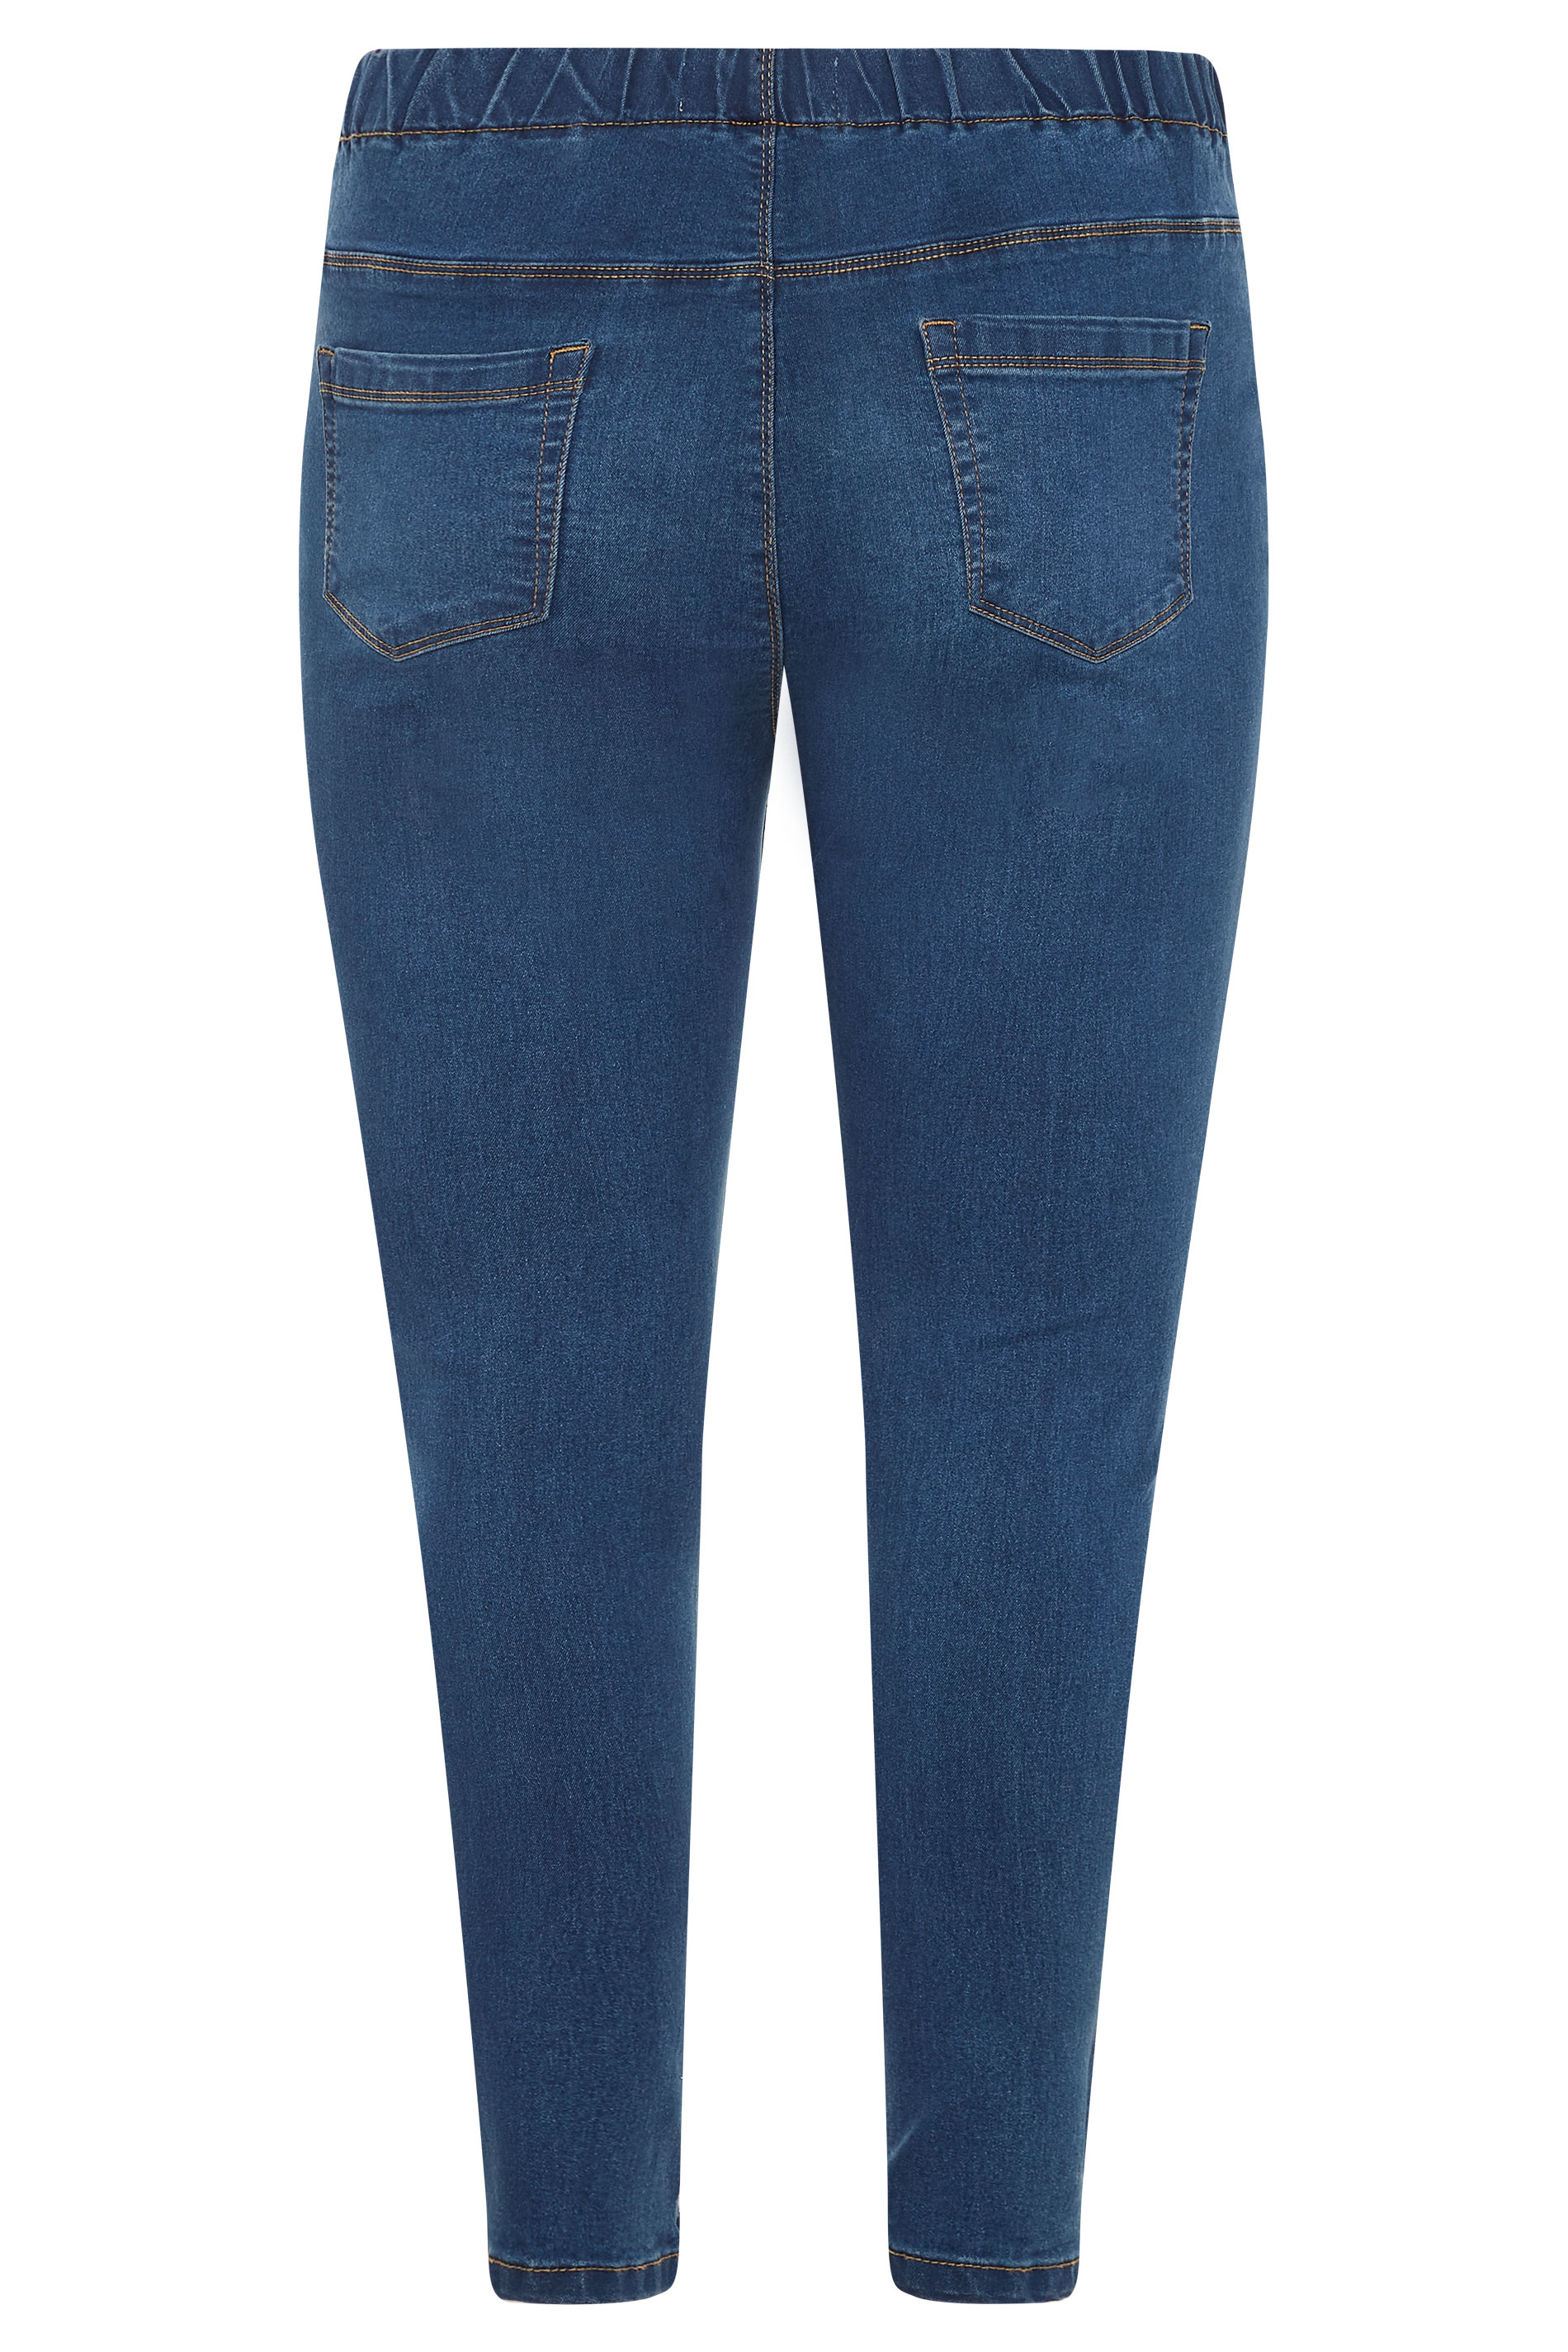 Denim Impulse 2.0 MidBlue Girls Jeans